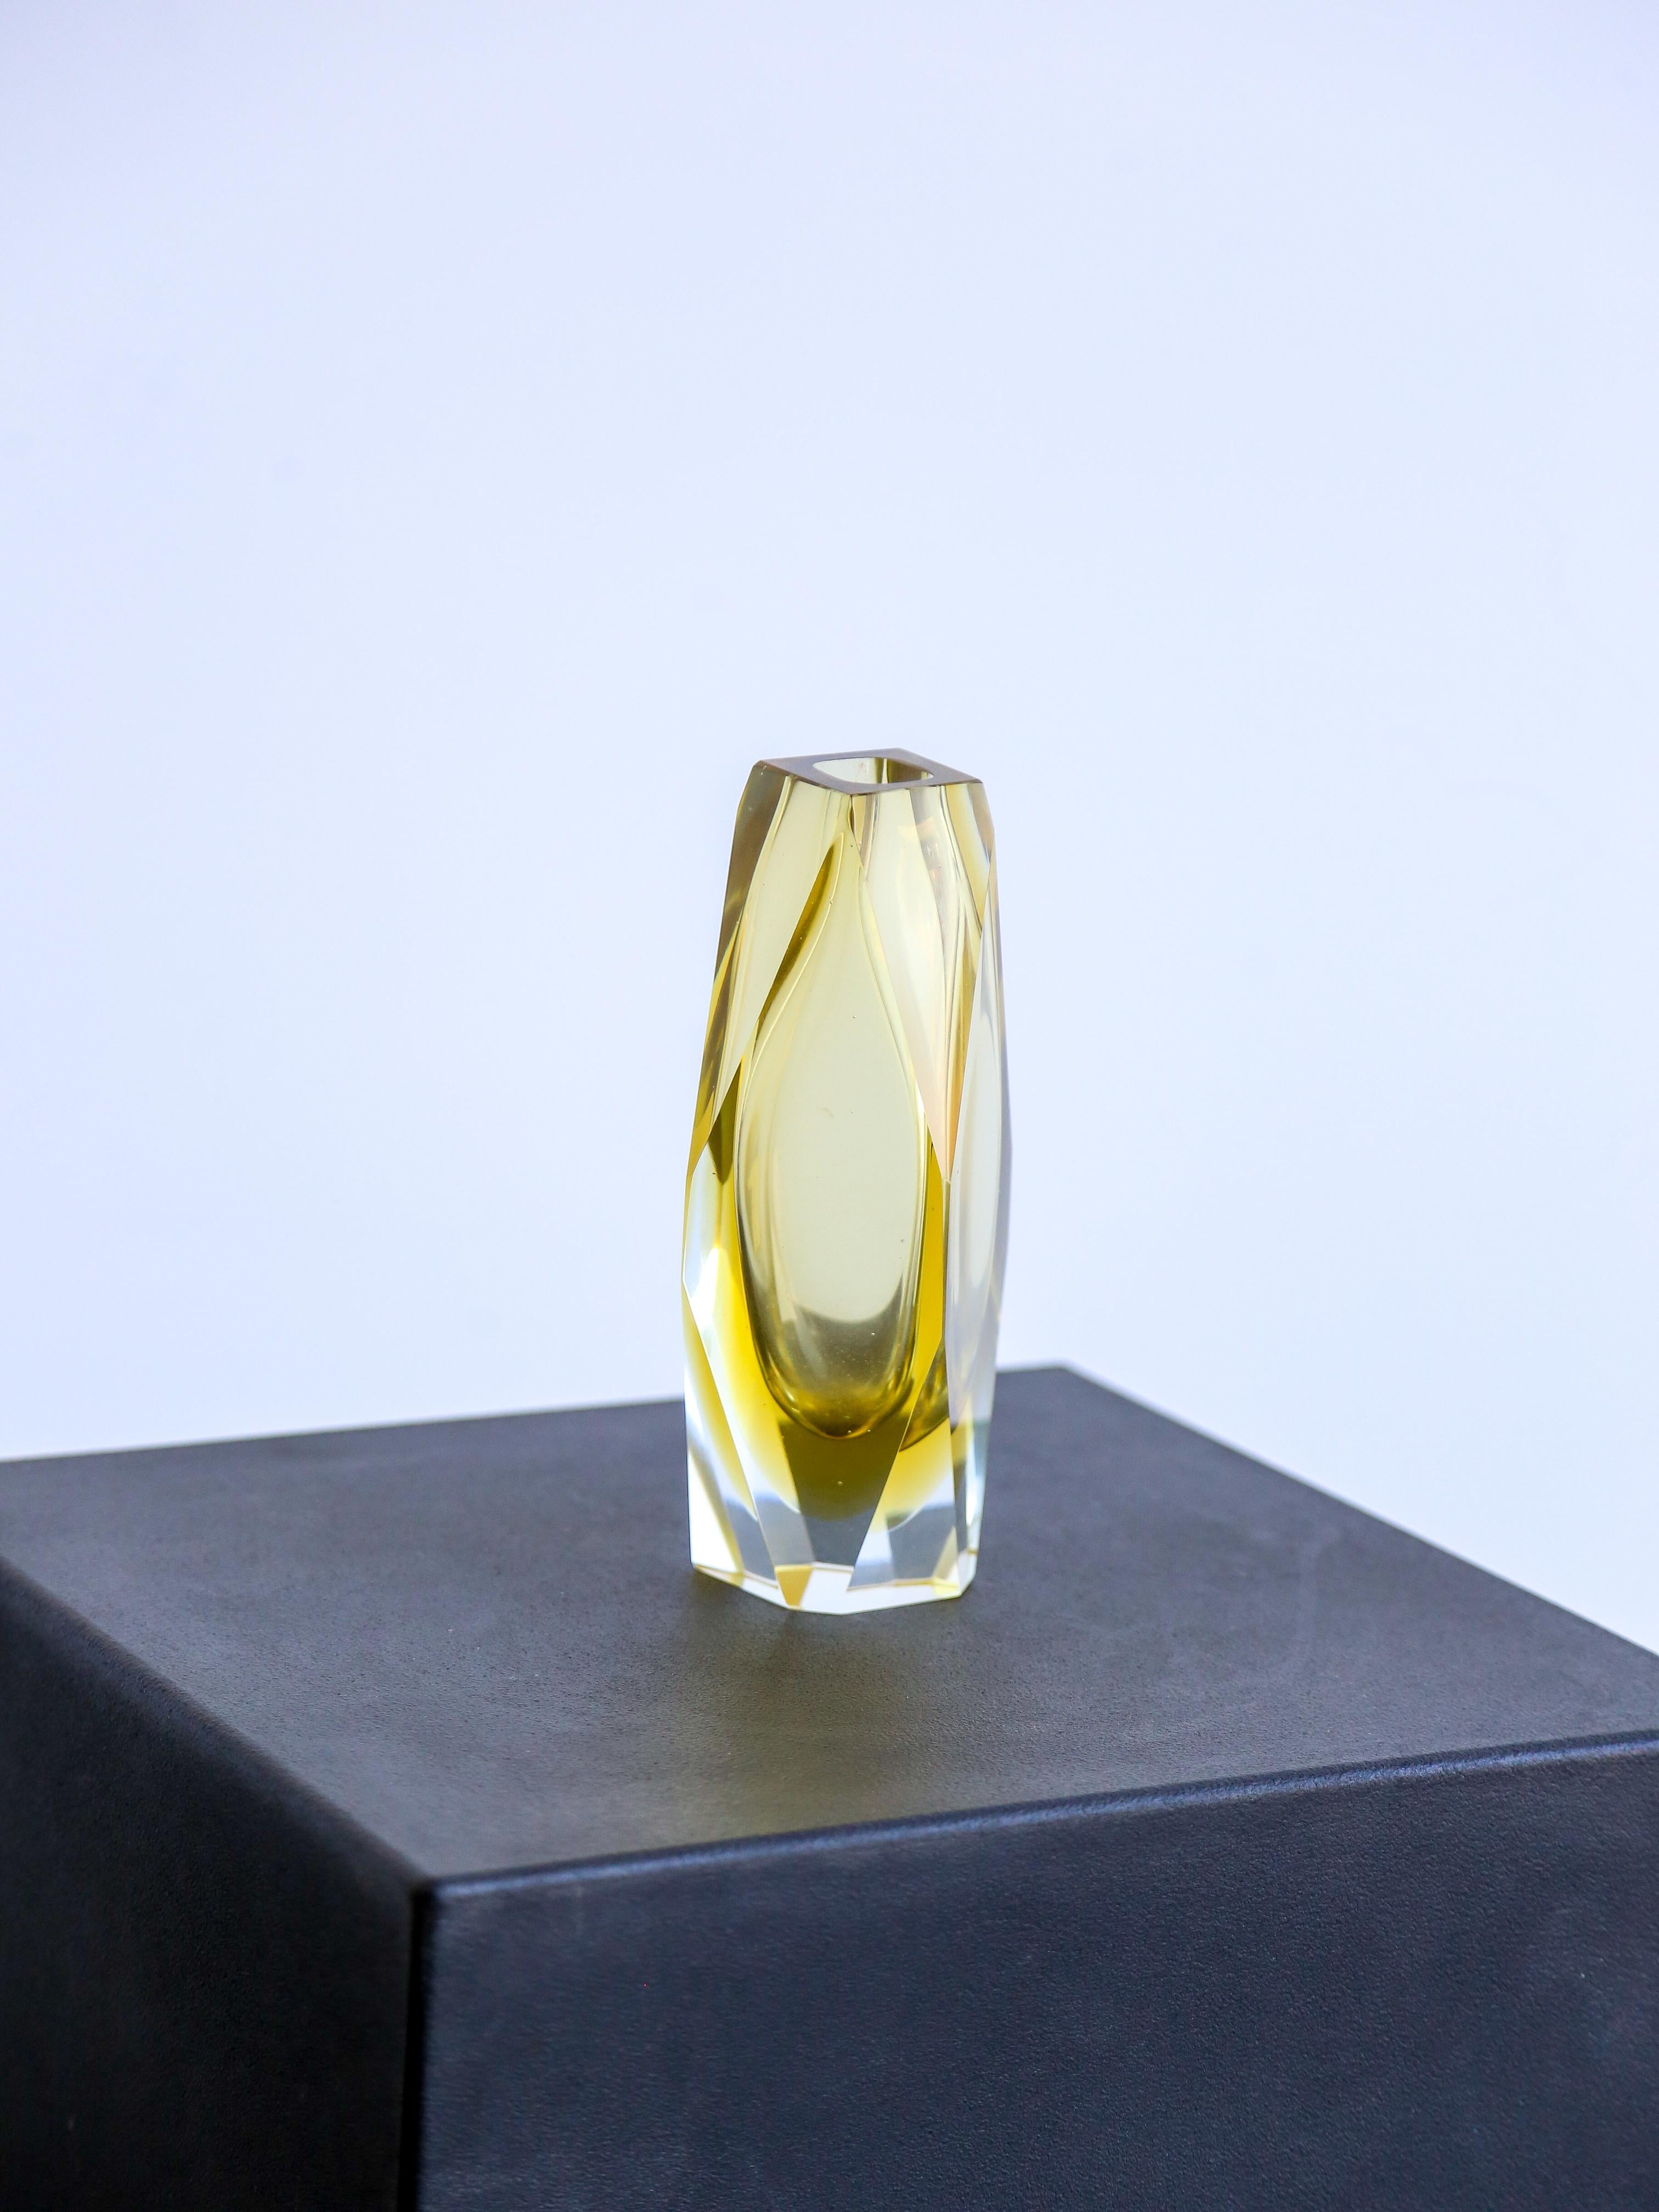 Murano Sommerso dicke gelbe Kunstglasvase.

Murano Sommerso ist eine Glasherstellungstechnik, die Mitte des 20. Jahrhunderts auf der venezianischen Insel Murano entstanden ist. Bei dieser Technik werden verschiedene Glasfarben übereinander